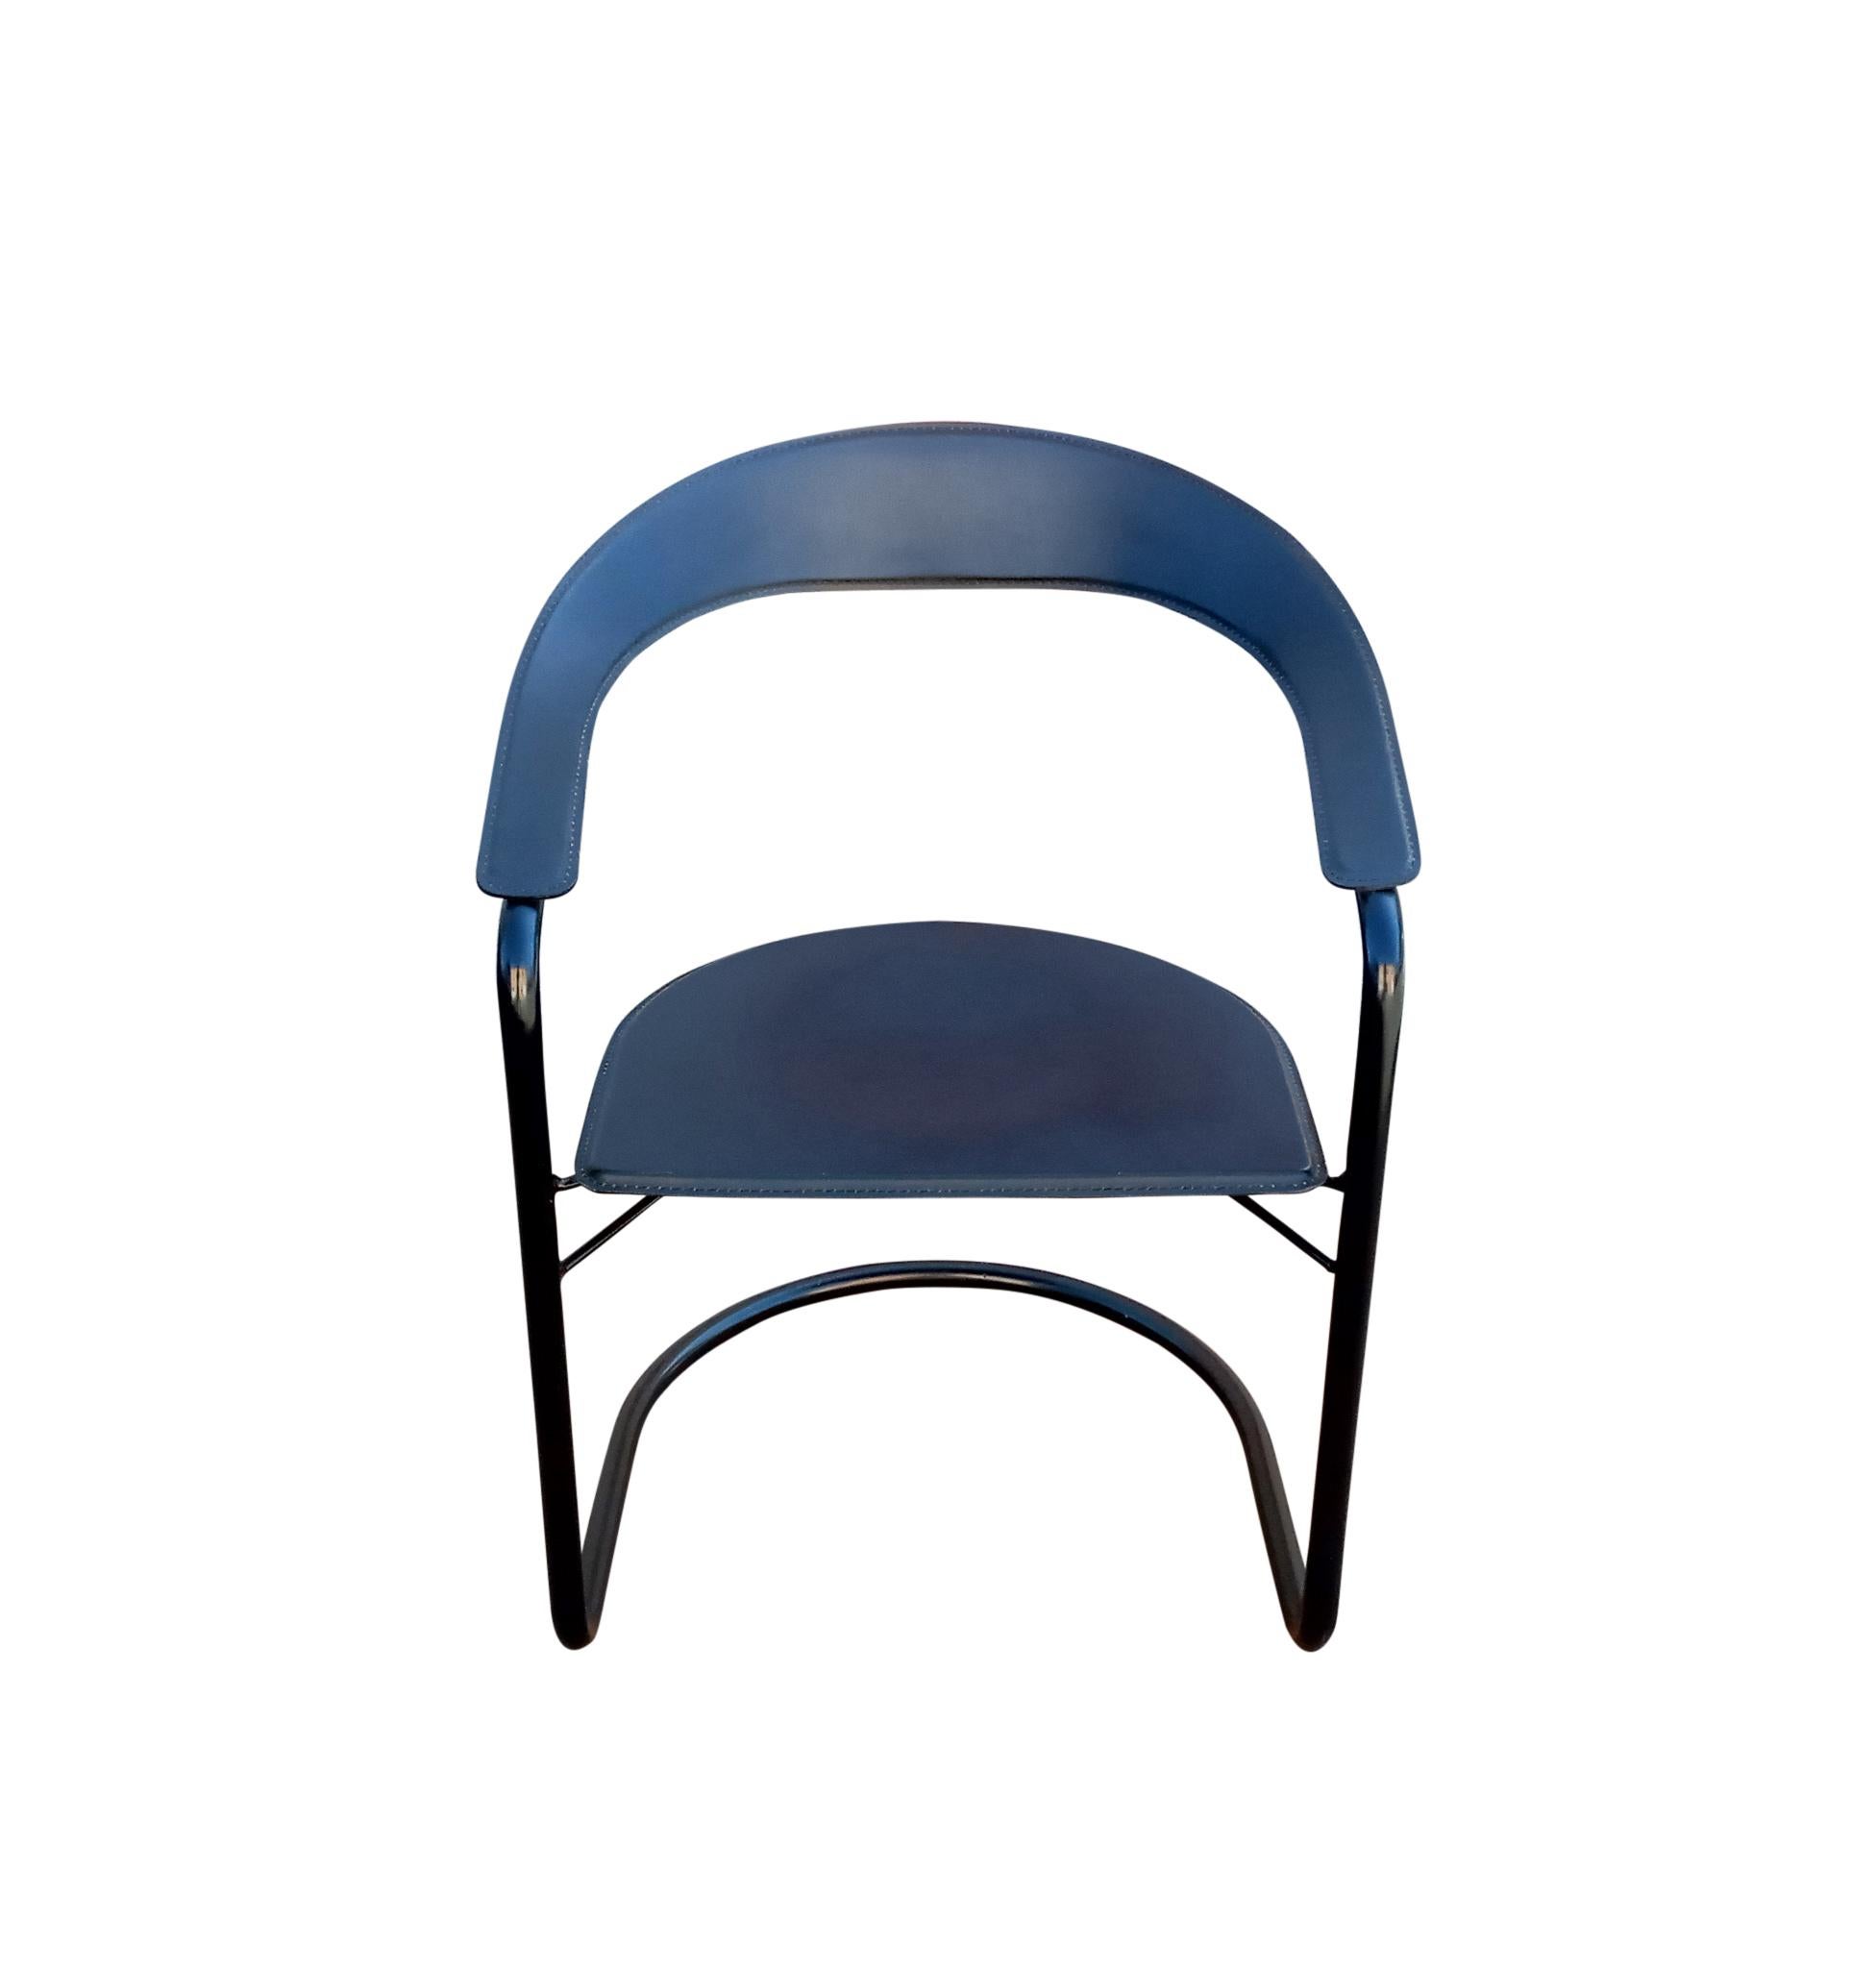 Vintage Post-Modern Satz von sechs (6) 'Canasta' Sesseln von Arrben aus Italien, in genähtem dickem Sattelleder auf emaillierten Stahlrohrrahmen montiert. Beachten Sie, wie die Sitze der Schwerkraft trotzen, da sie keine vertikalen Verbindungen zur